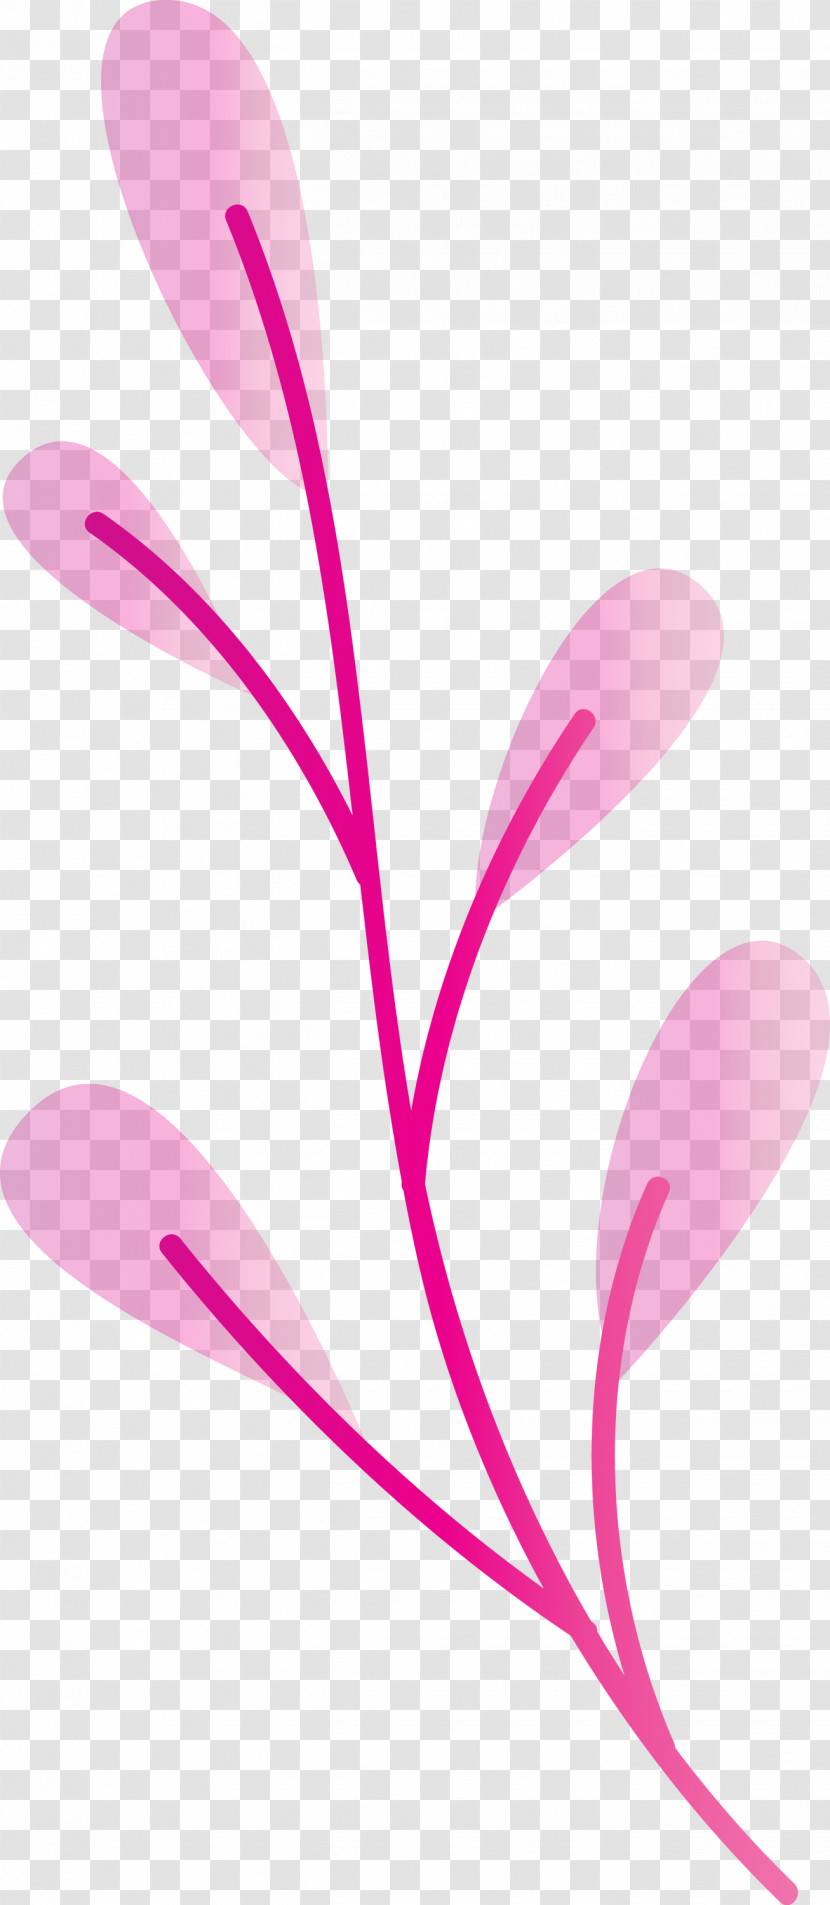 Plant Stem Petal Leaf Branch Pink M Transparent PNG